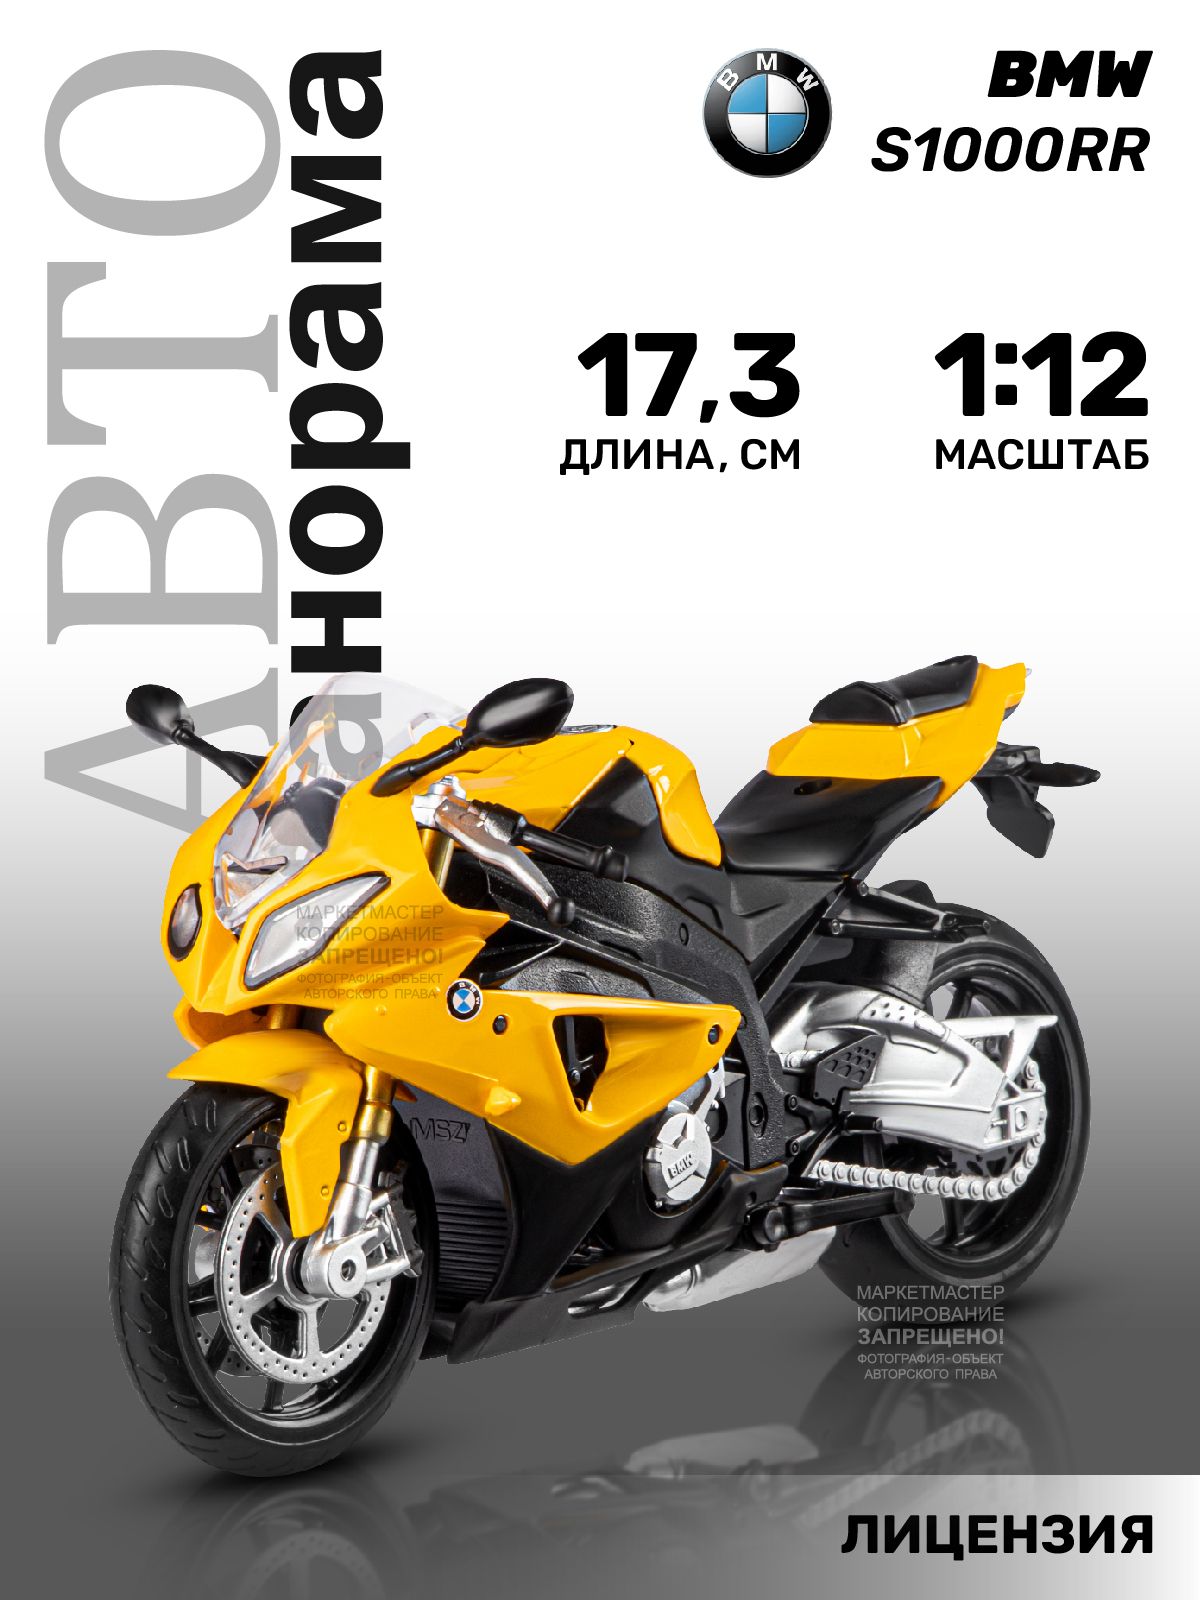 Мотоциклметаллический,сподножкойBMWS1000R,1:12/игрушкадлямальчиков,железнаямоделька,игрушечныйтранспорт,мото